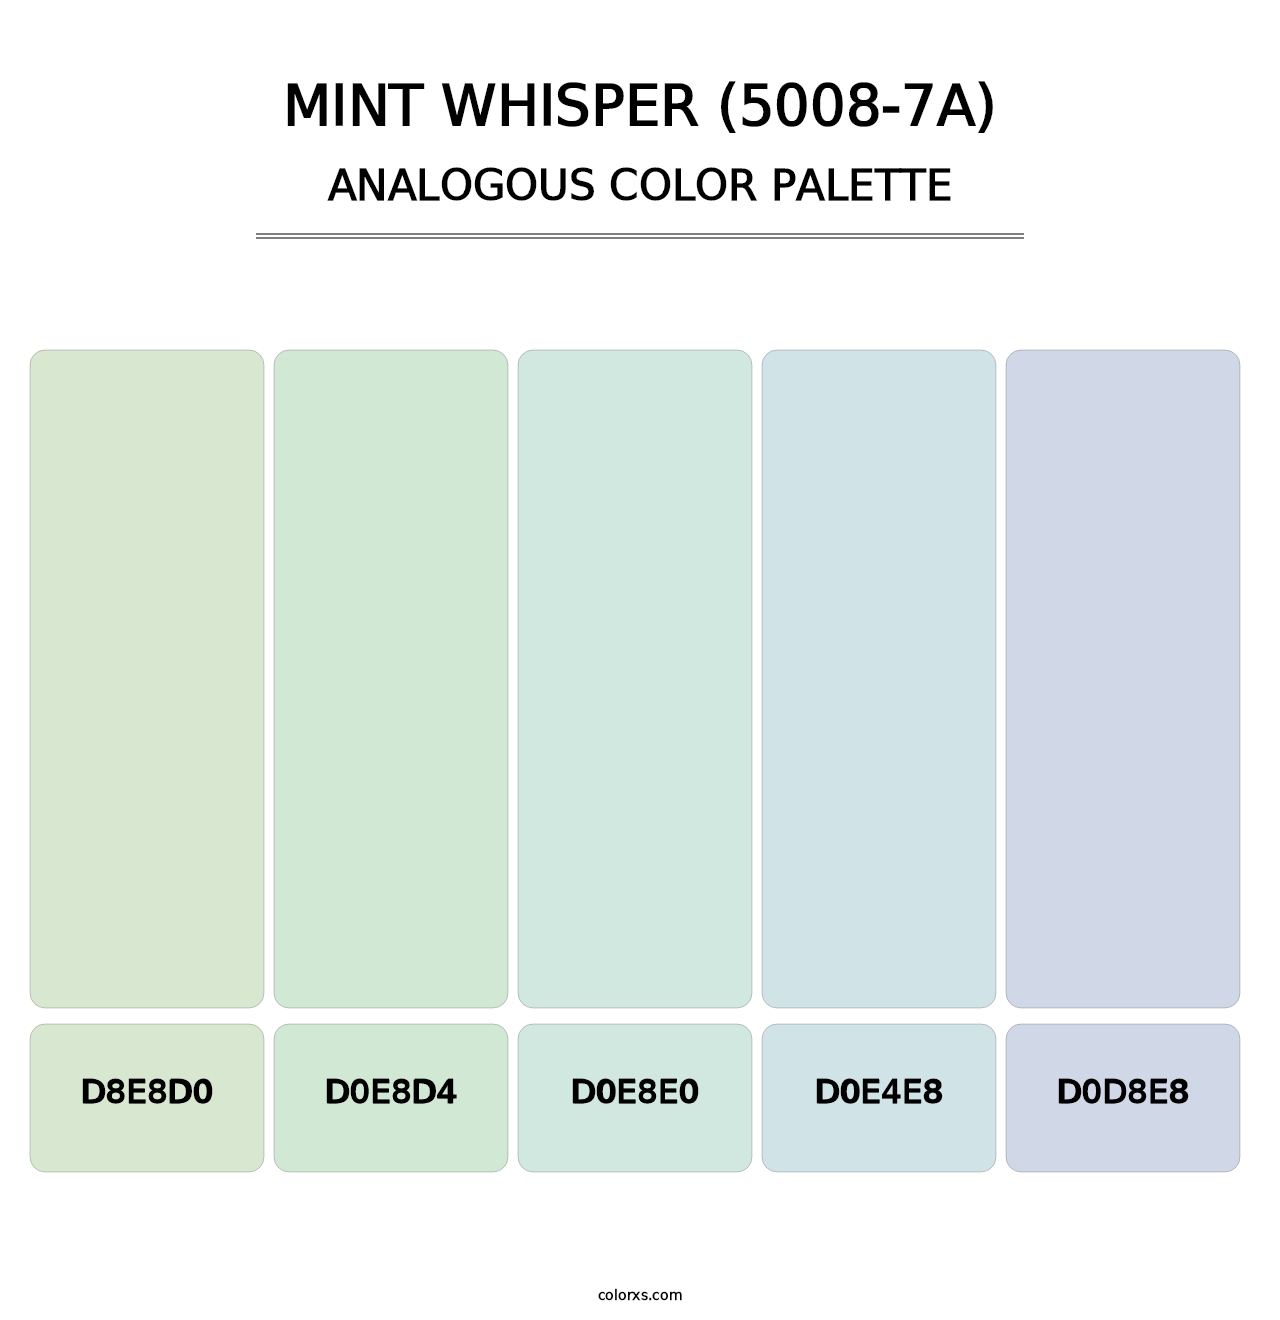 Mint Whisper (5008-7A) - Analogous Color Palette